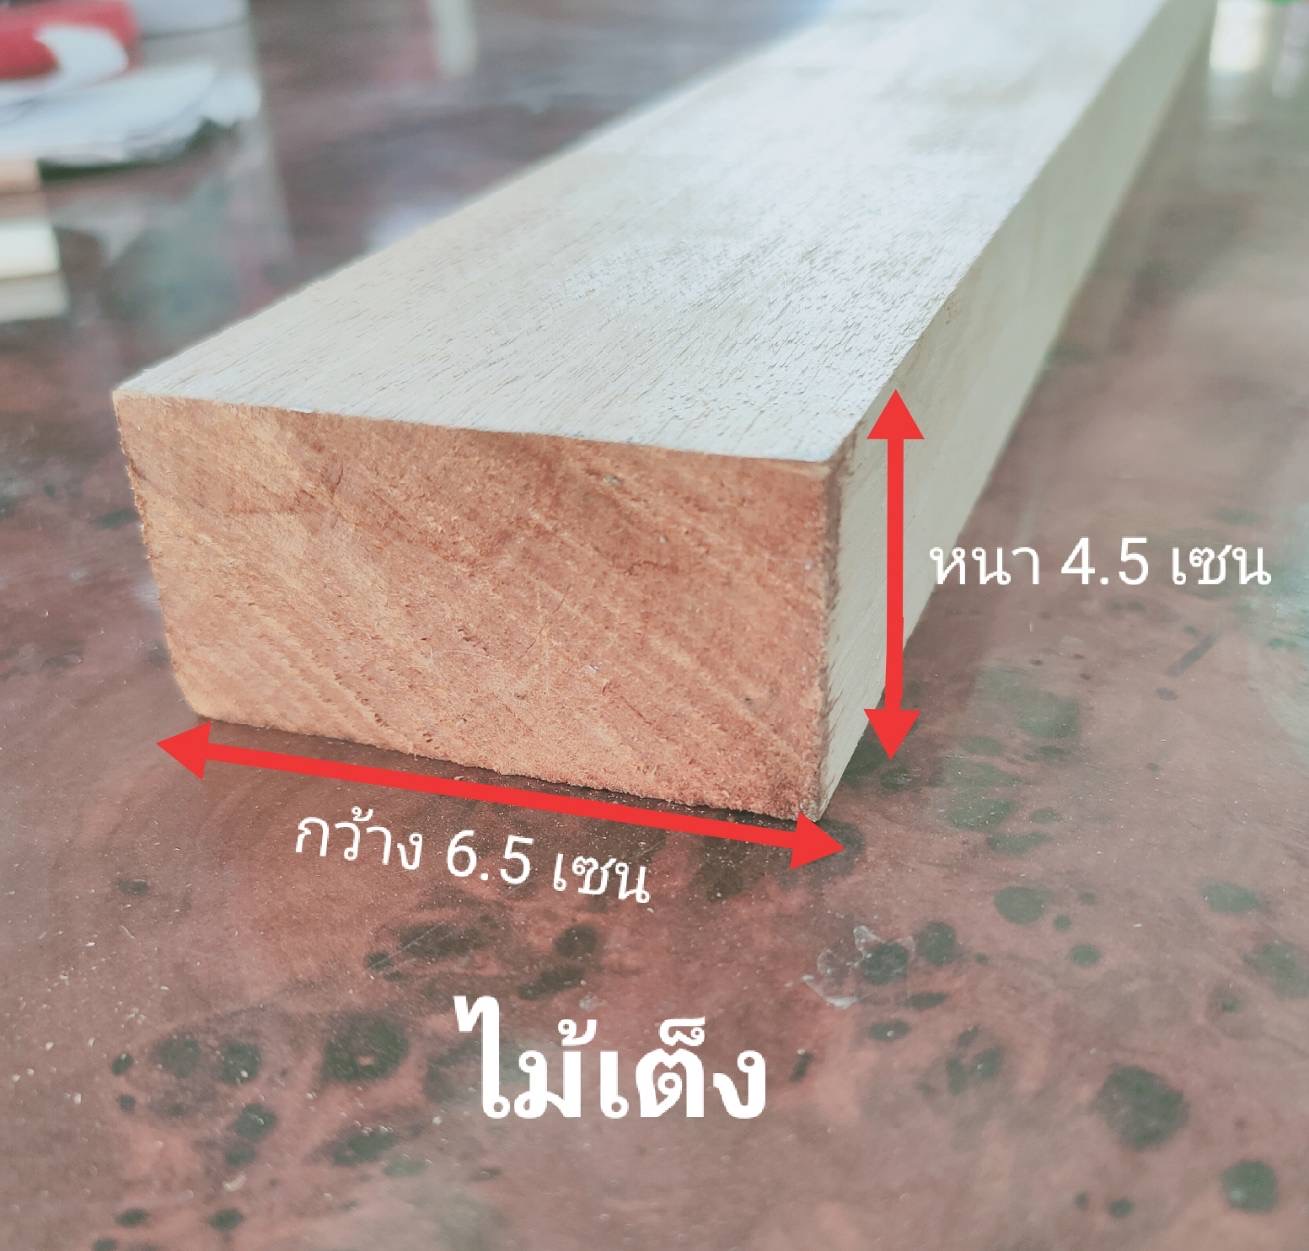 ไม้เต็งไสเรียบ ขนาด หนา 4.5 เซน กว้าง 6.5 เซน ไม้ตงวางคาน ไม้ปะหน้าทำงาน DIY ไม้แผ่นสำเร็จ ไม้ต่อเติม ไม้แผ่นยาว ไม้อเนกประสงค์ ไม้โครง ส่งเร็วสามารถสั่งตัดขนาดพิเศษตามต้องการได้